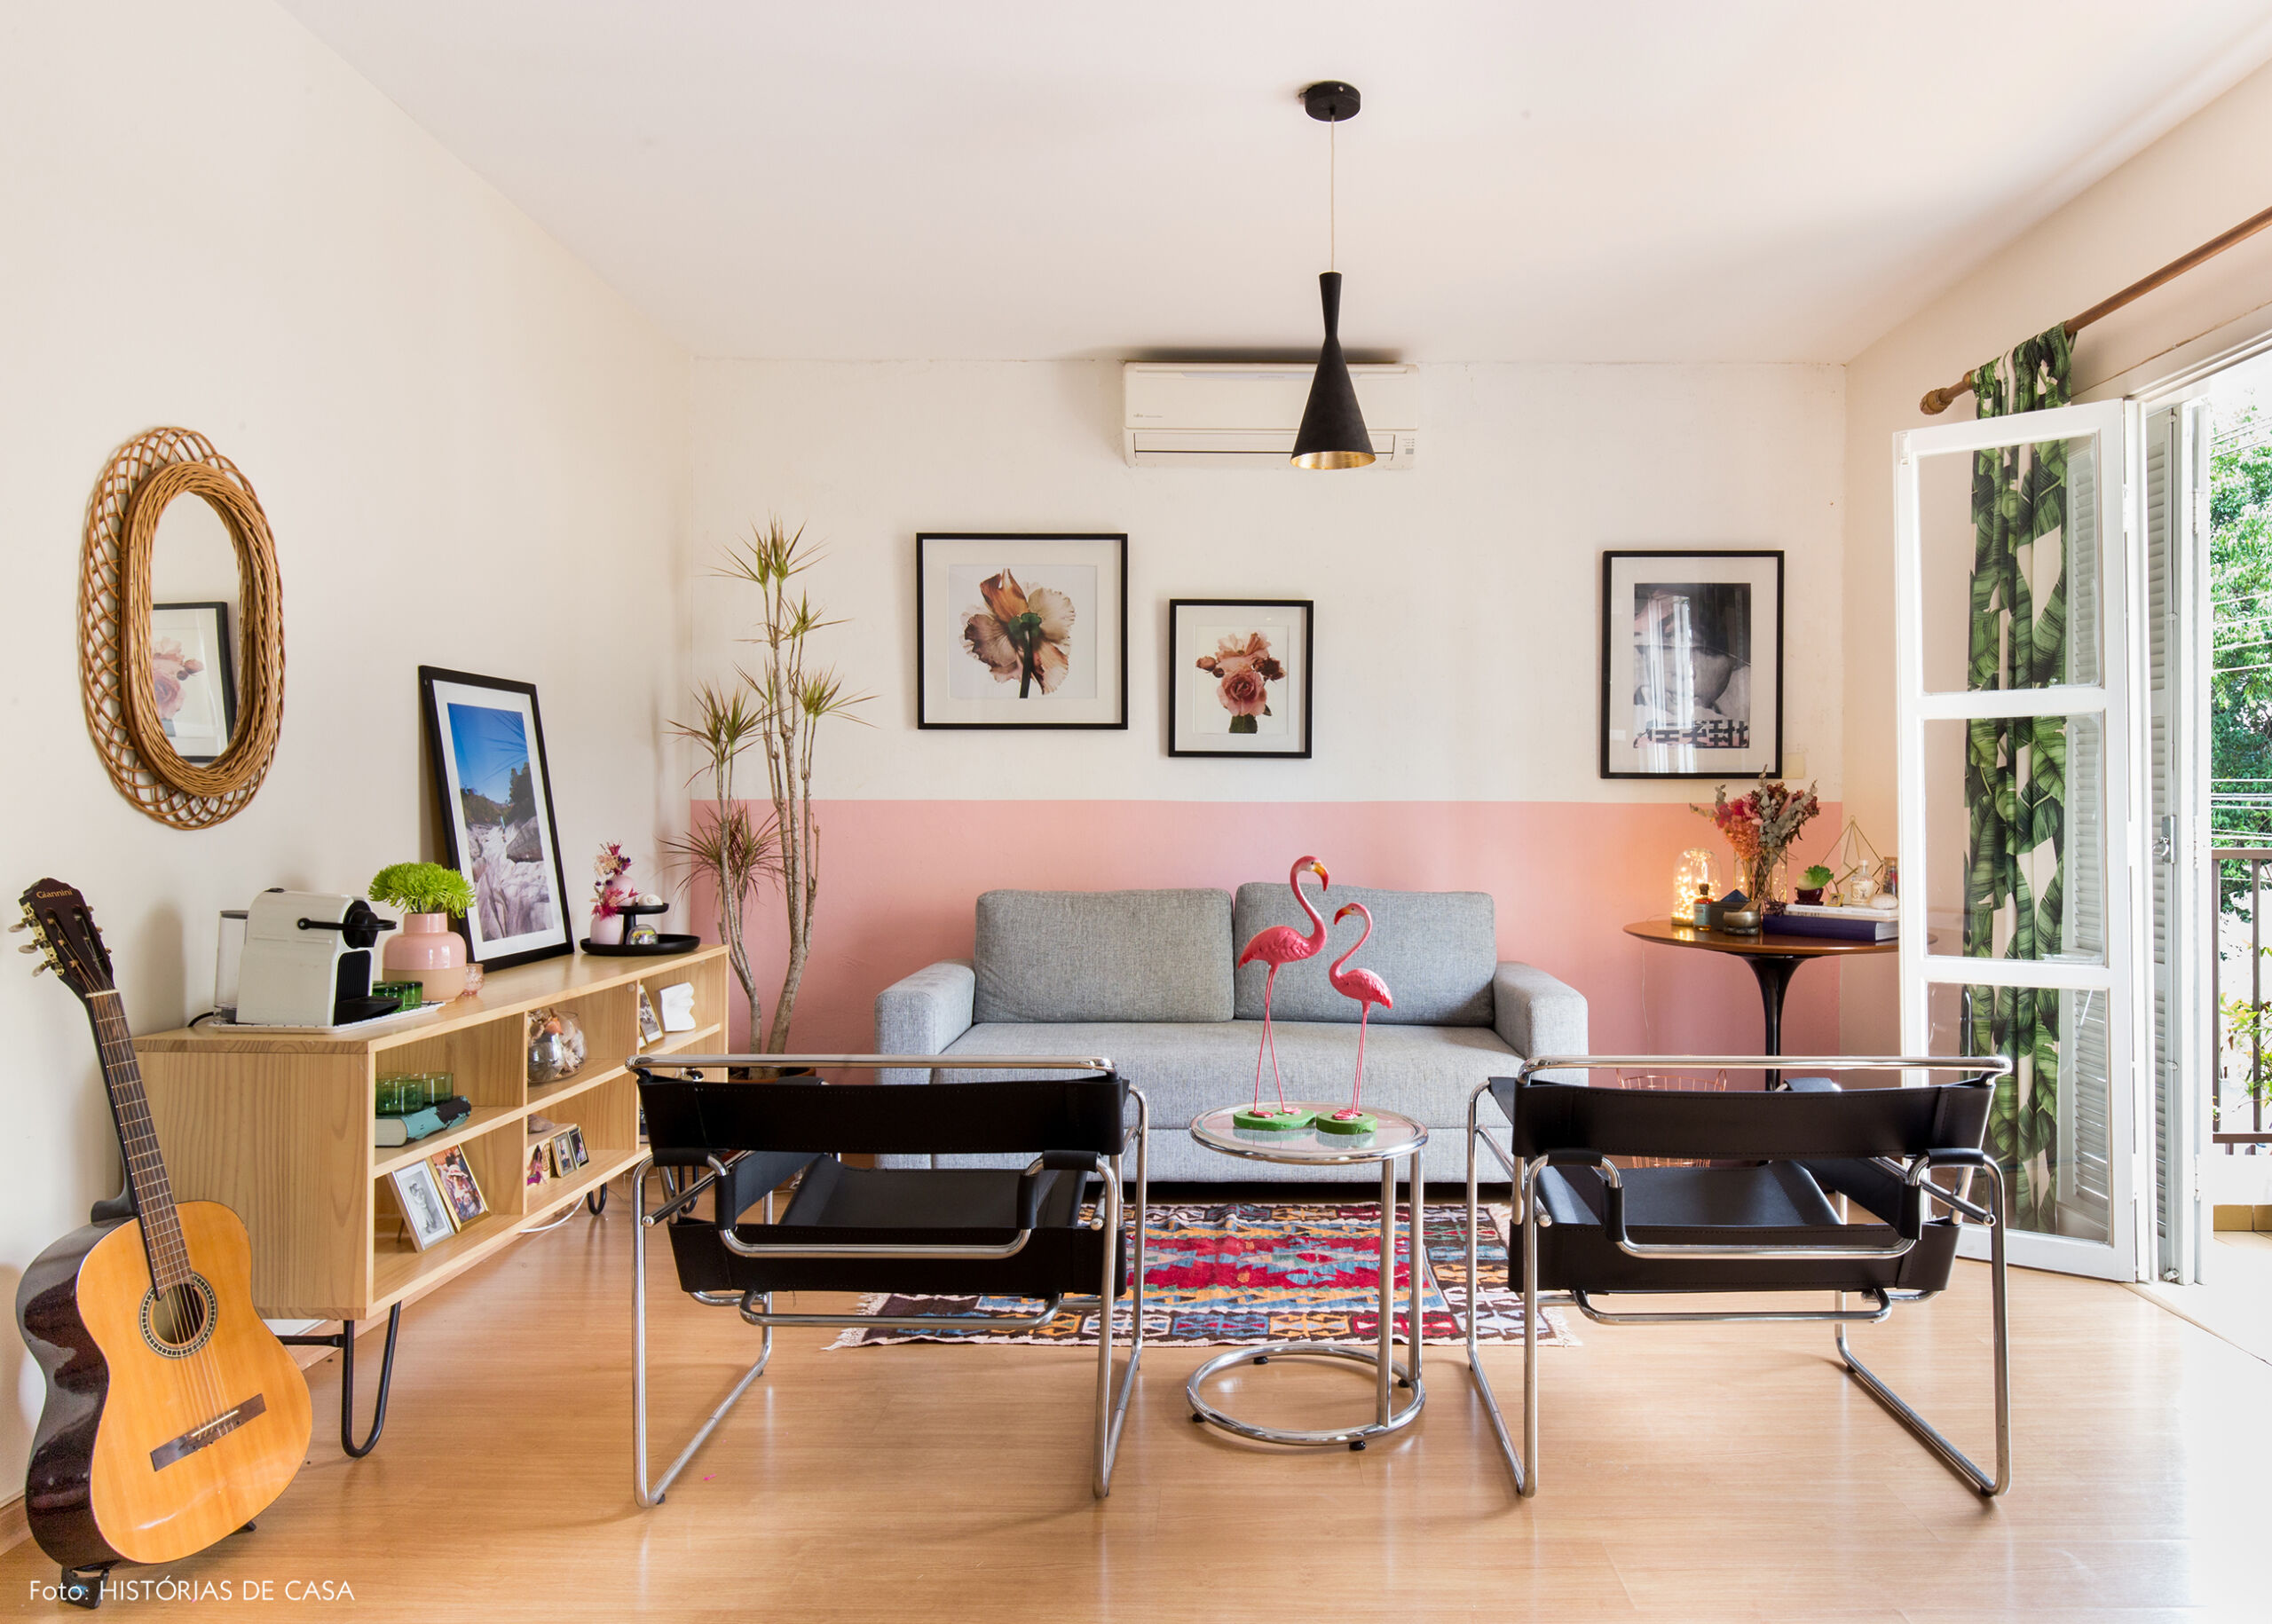 Sala com meia parede pintada de rosa e sofá cinza